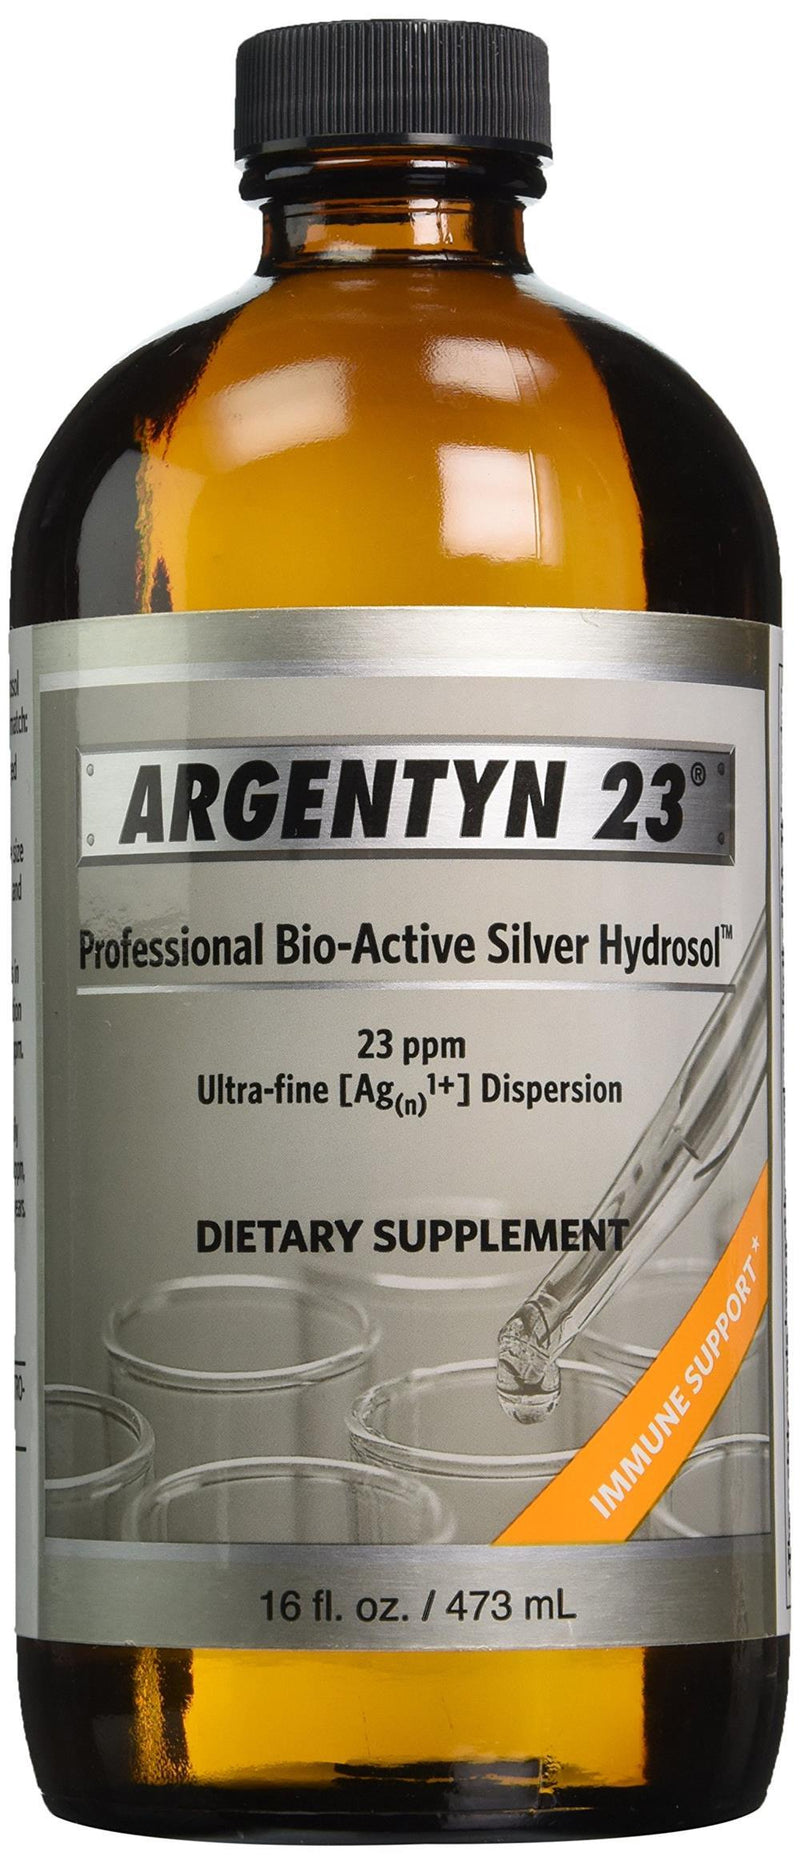 Argentyn 23 Professional Bio-Active Silver Hydrosol Twist Top Bottle -- 16 fl oz (473 mL)